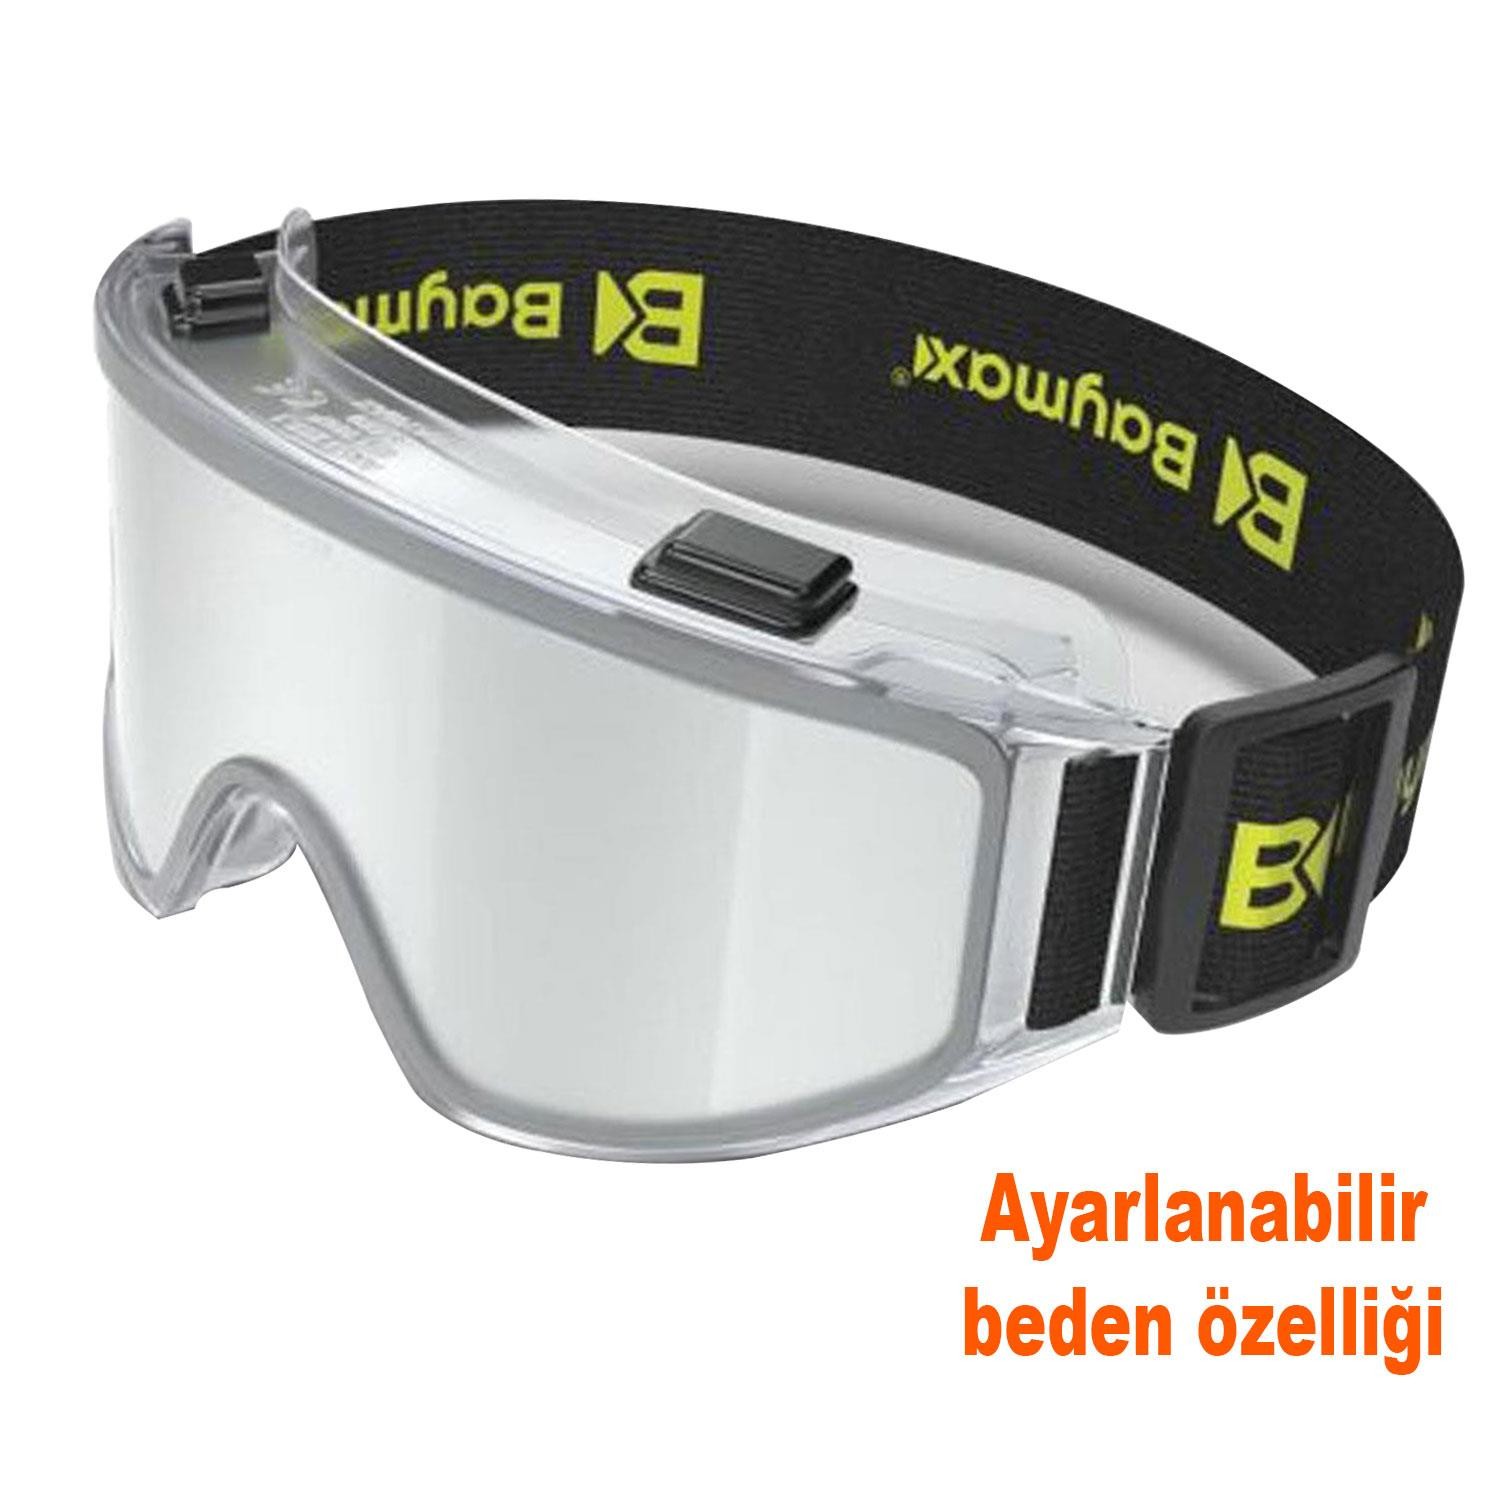 Baymax İş Güvenlik Gözlüğü Antifog Buğulanmaz Koruyucu Gözlük S550 Şeffaf 12 Adet